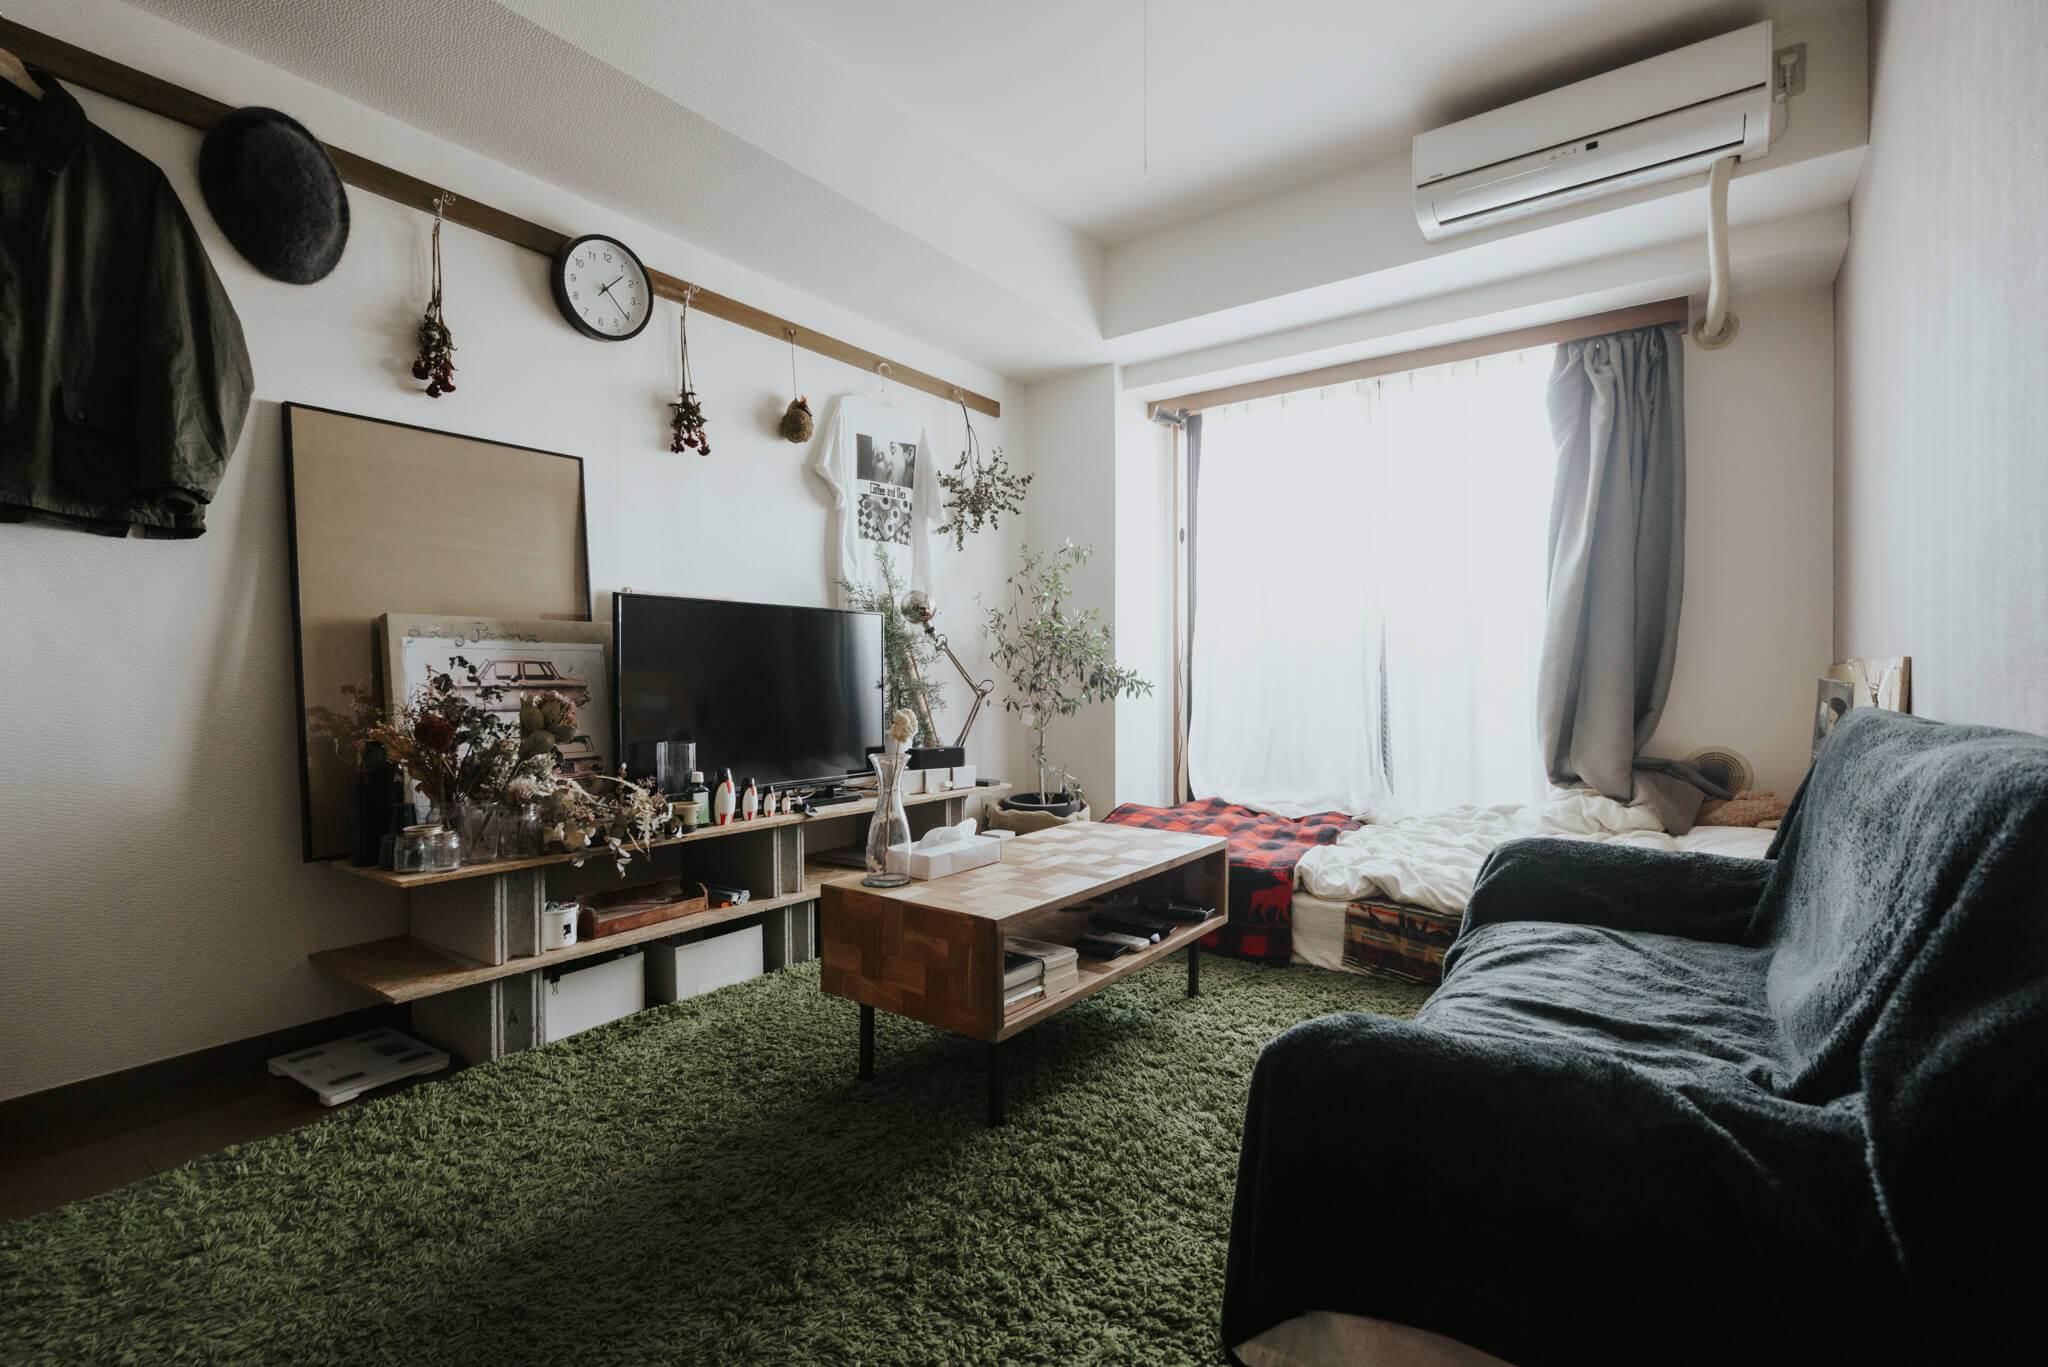 中富さんのお部屋は、低いベッドに対して大きめソファを直角に配置。ソファに座ったときに視界に入るテレビボードに好きなものを凝縮しています。